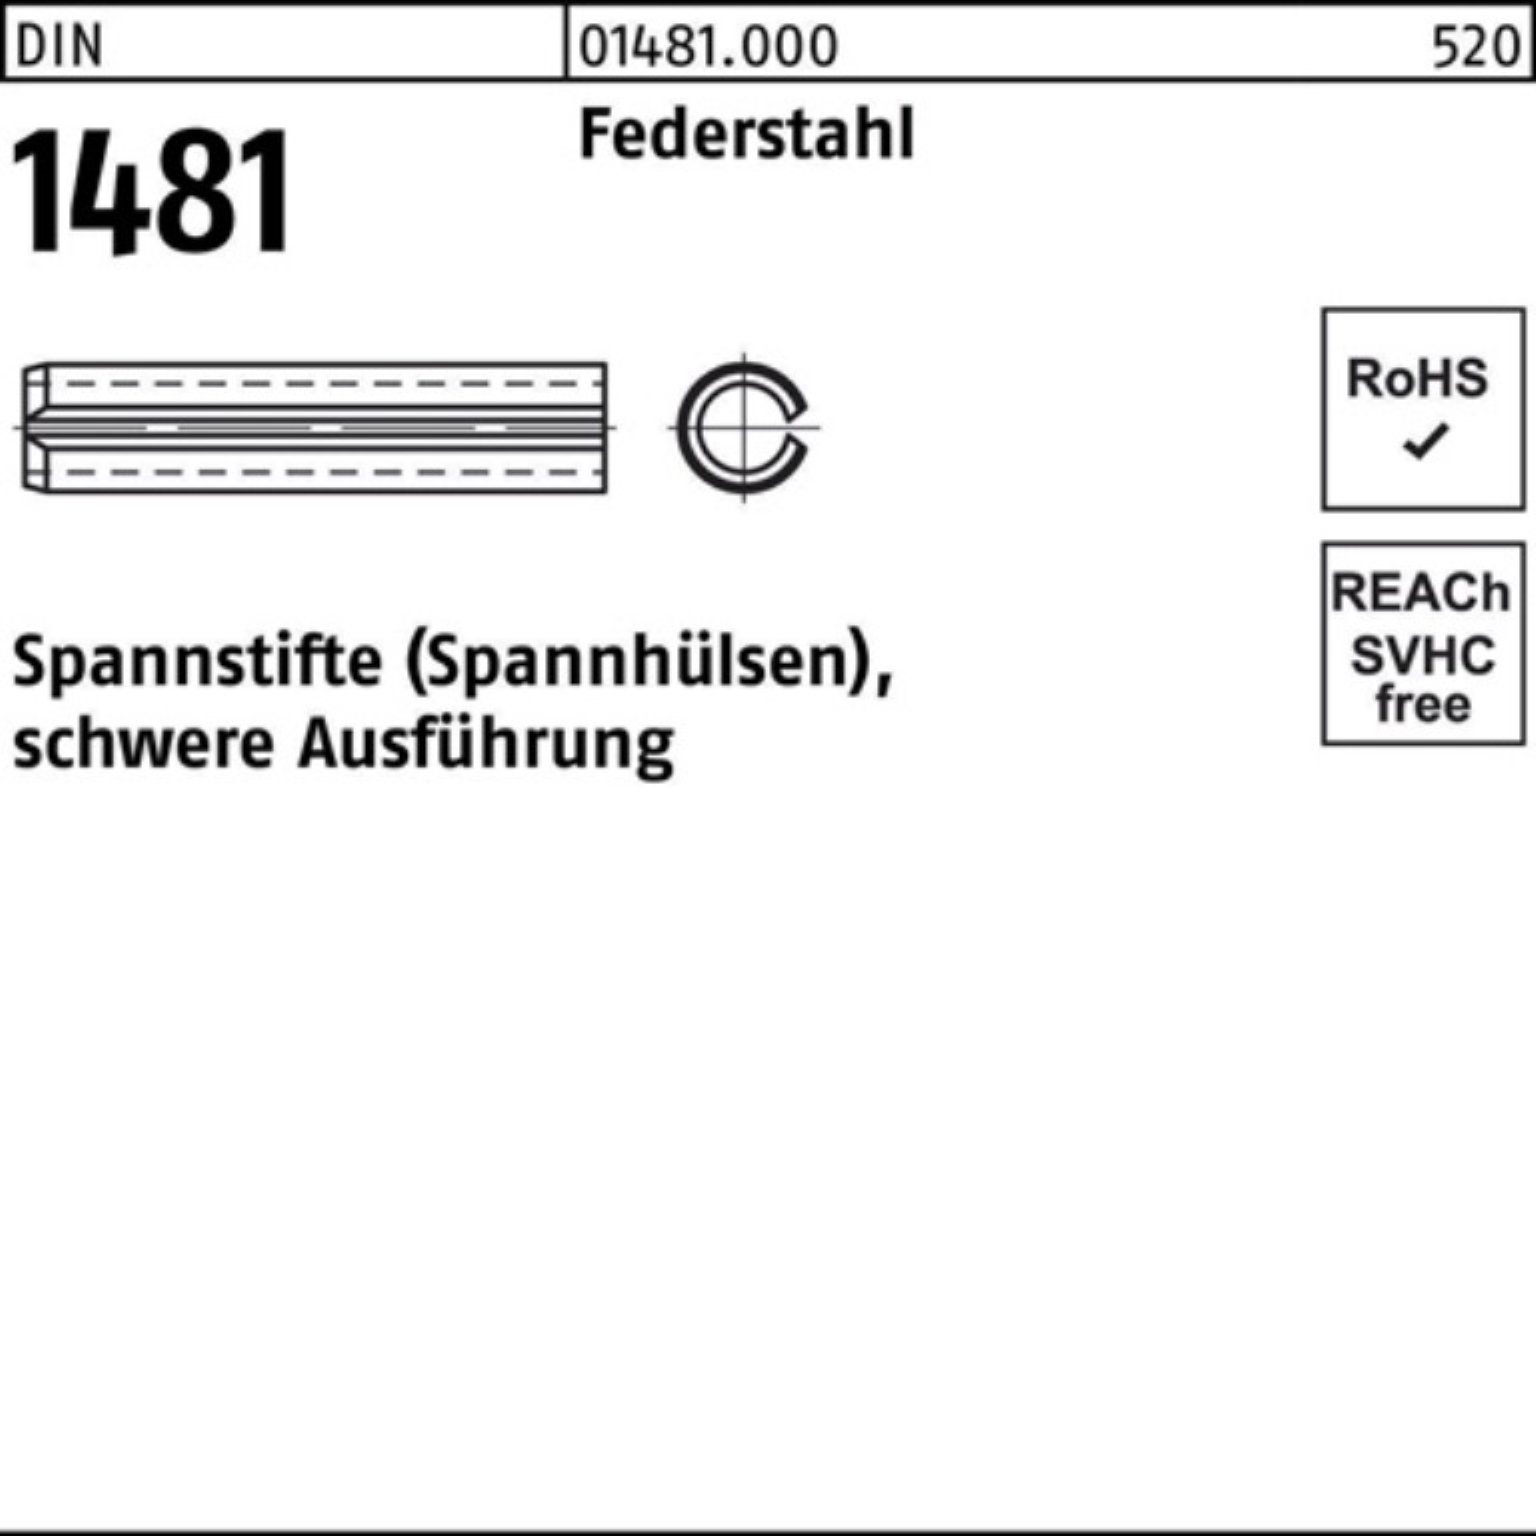 Reyher Spannstift 100er Pack Spannstift DIN 1481 10x 60 Federstahl schwere Ausführung 5